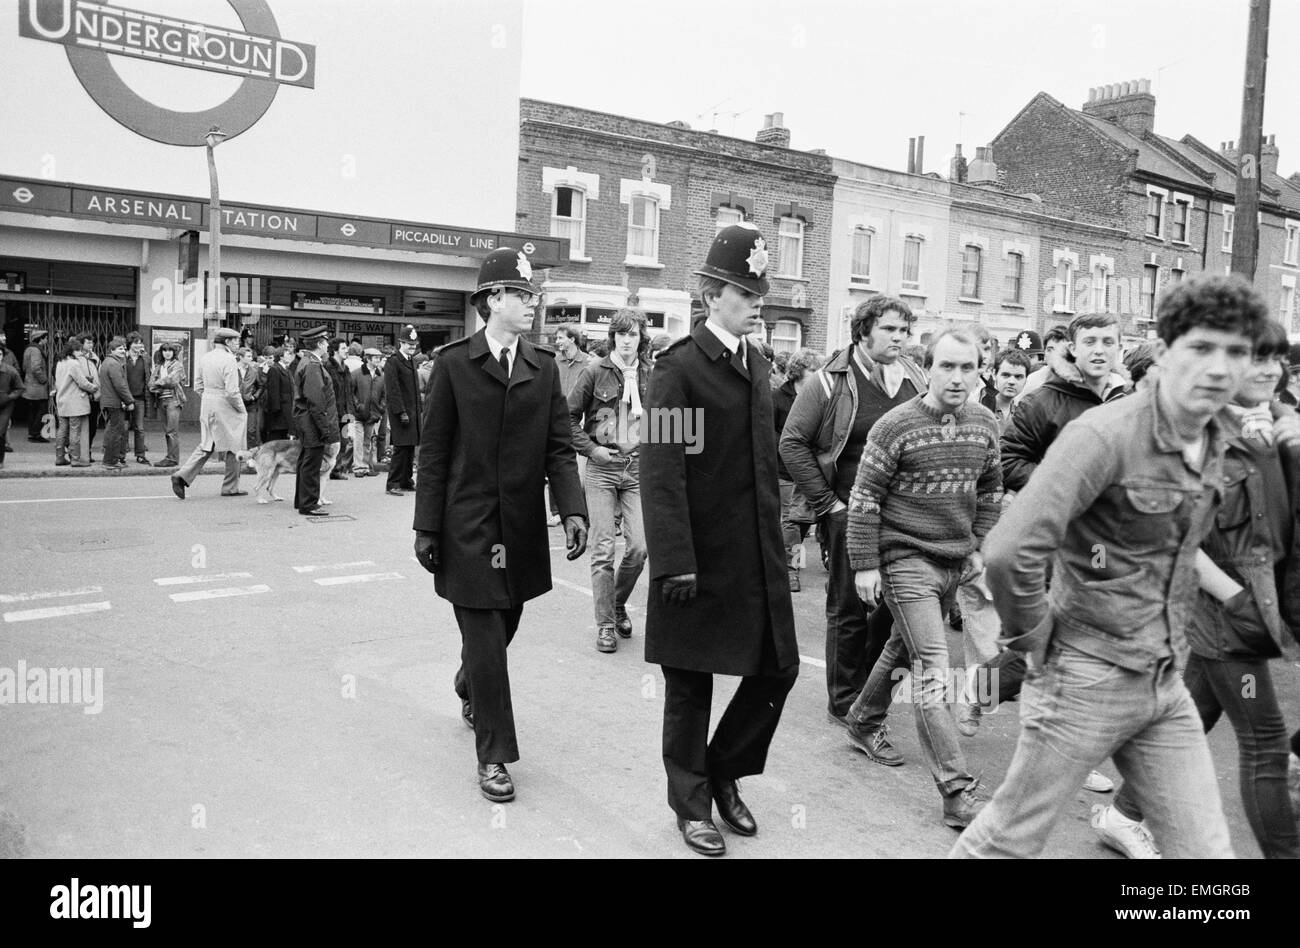 La polizia a mantenere un occhio su Leeds United sostenitori all'Arsenal Football Ground come tifosi arrivano alla stazione Arsenale in anticipo del match. Il 29 gennaio 1983. Foto Stock